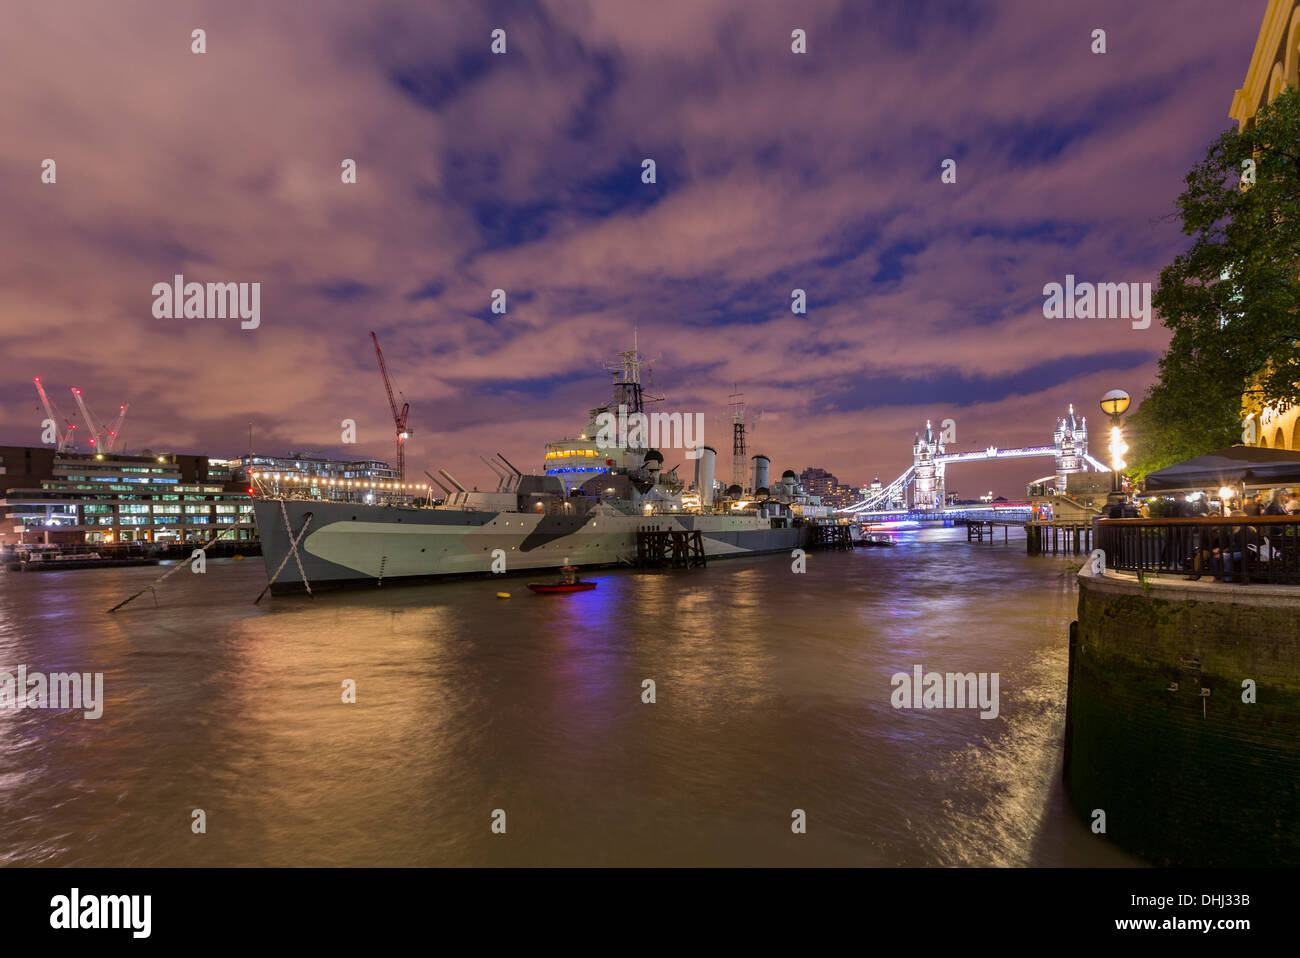 Photo de nuit de la Tamise, le HMS Belfast, Tower Bridge au début de crépuscule Banque D'Images